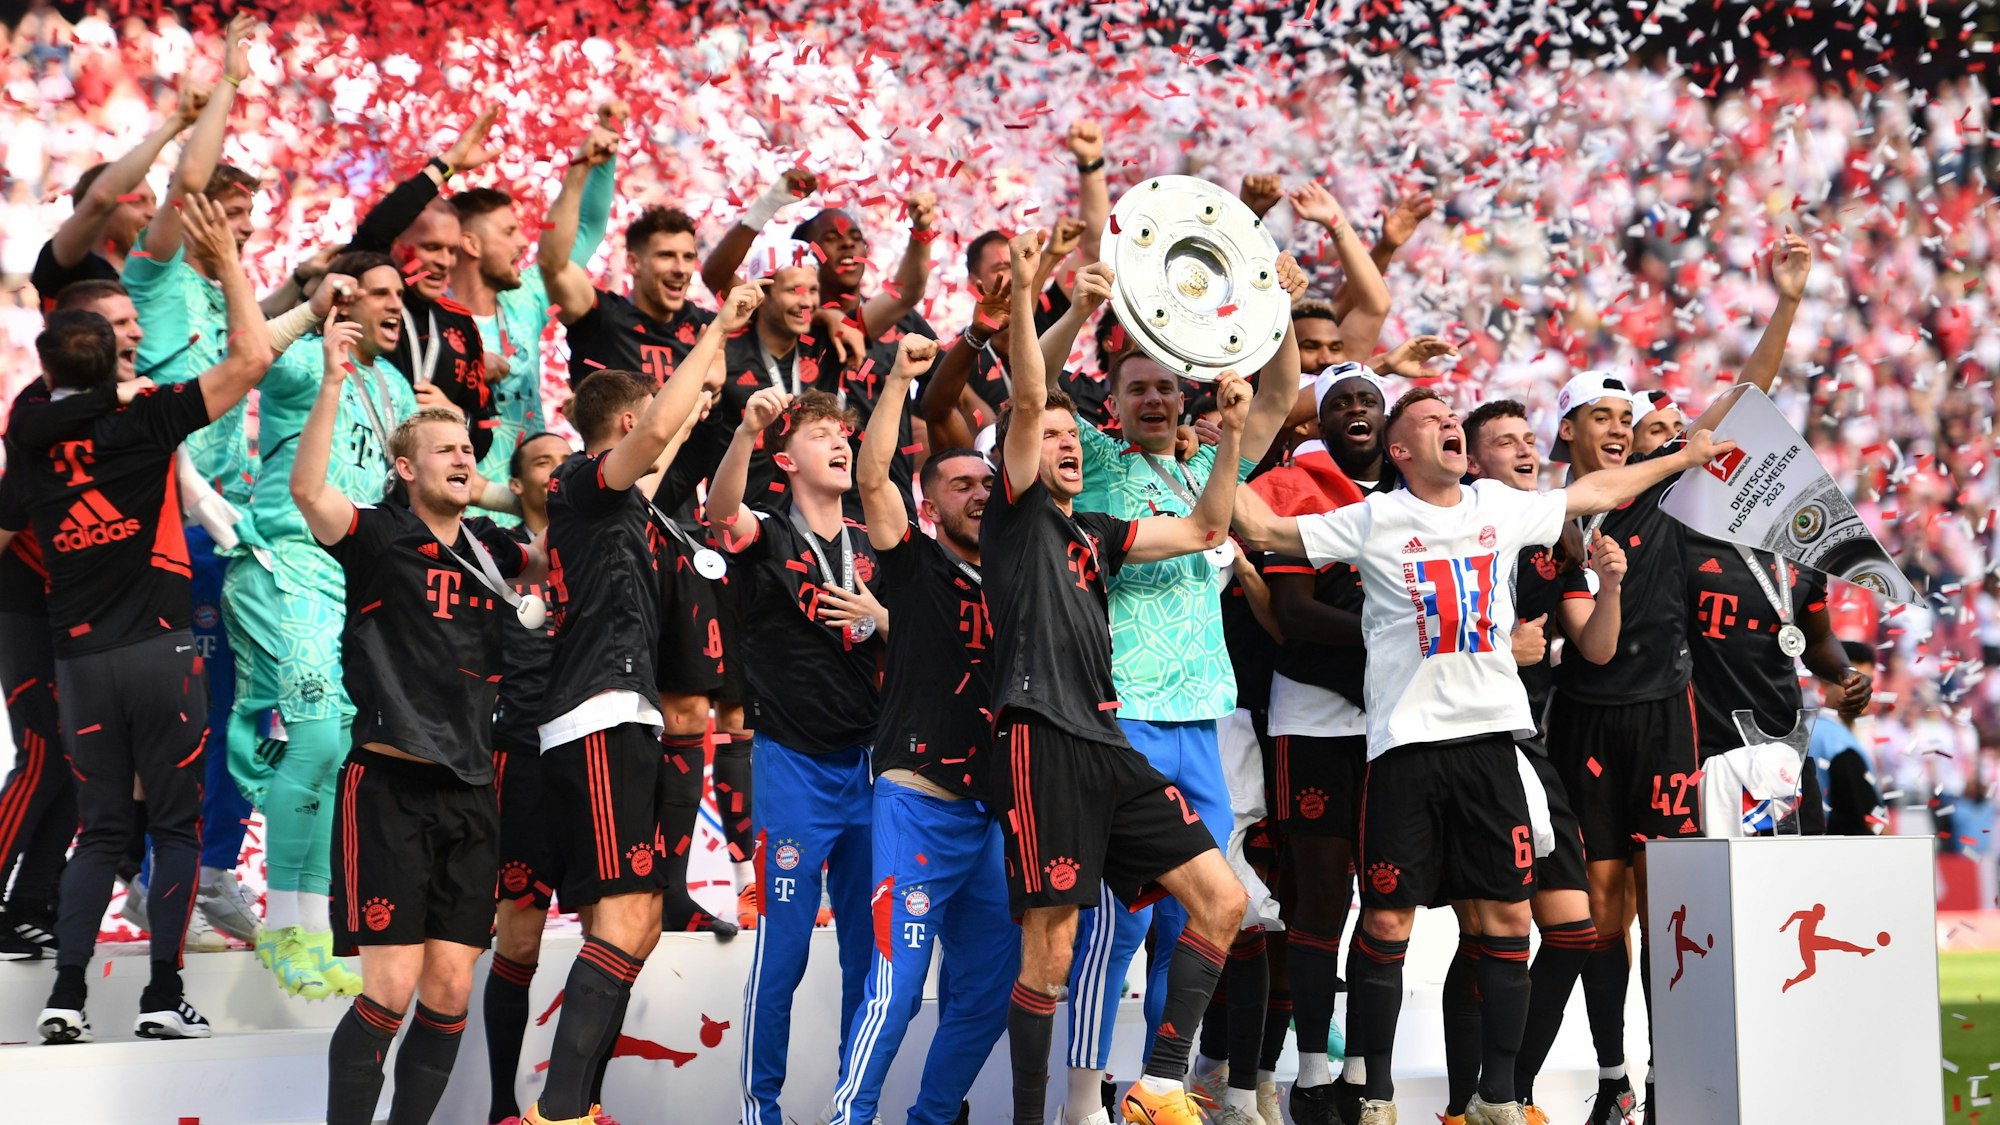 Bayerns Torhüter Manuel Neuer (Mitte r) hält die Meisterschale hoch, während seine Teamkollegen nach dem Gewinn der 33. deutschen Meisterschaft jubeln.